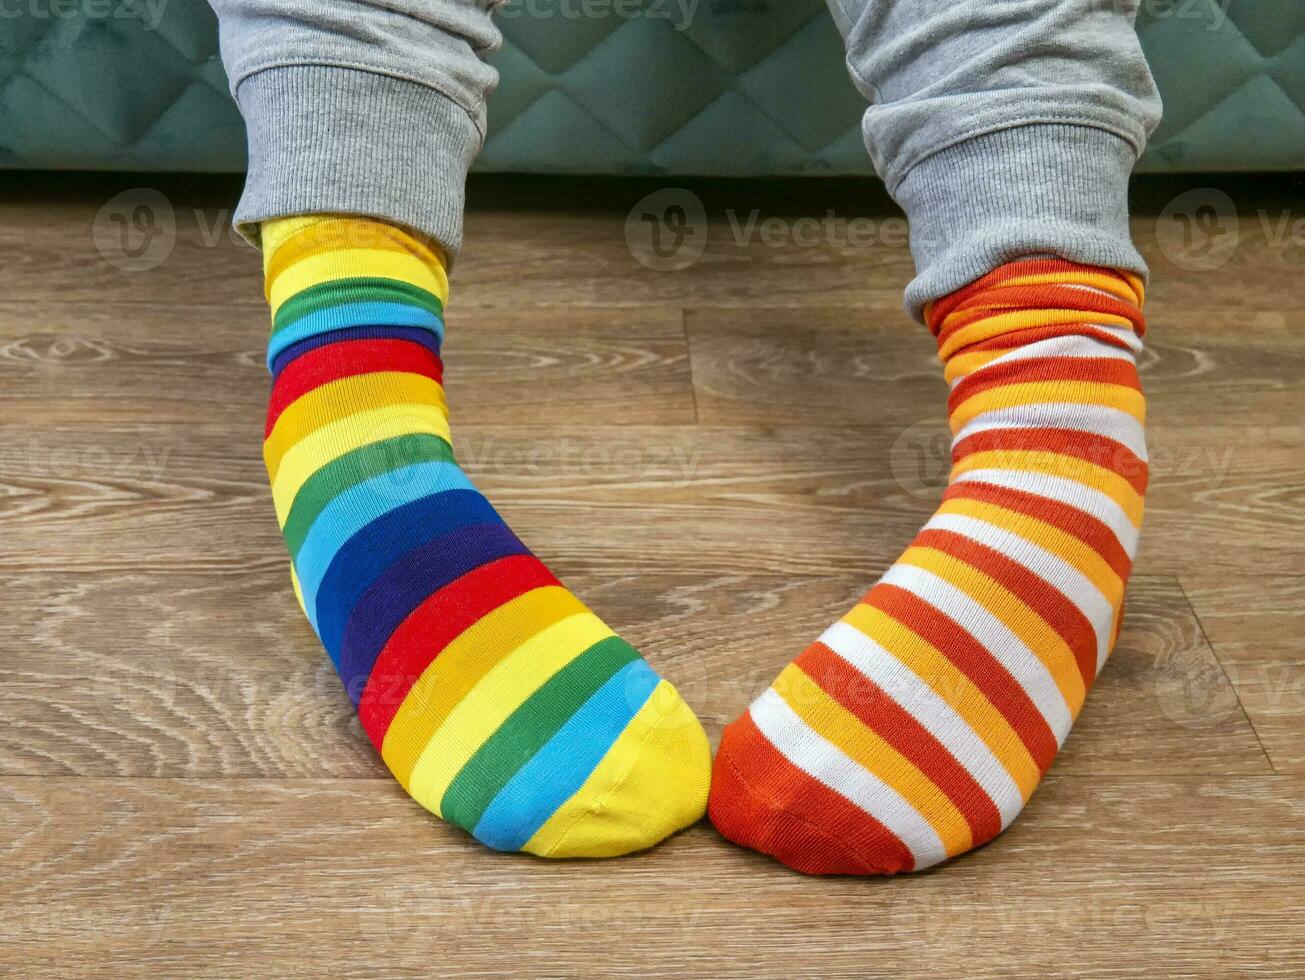 seltsam Socken Tag. einsam Socke Tag. das Sozial Problem von Mobbing. seltsam Socken wie ein Symbol von Nieder Syndrom foto